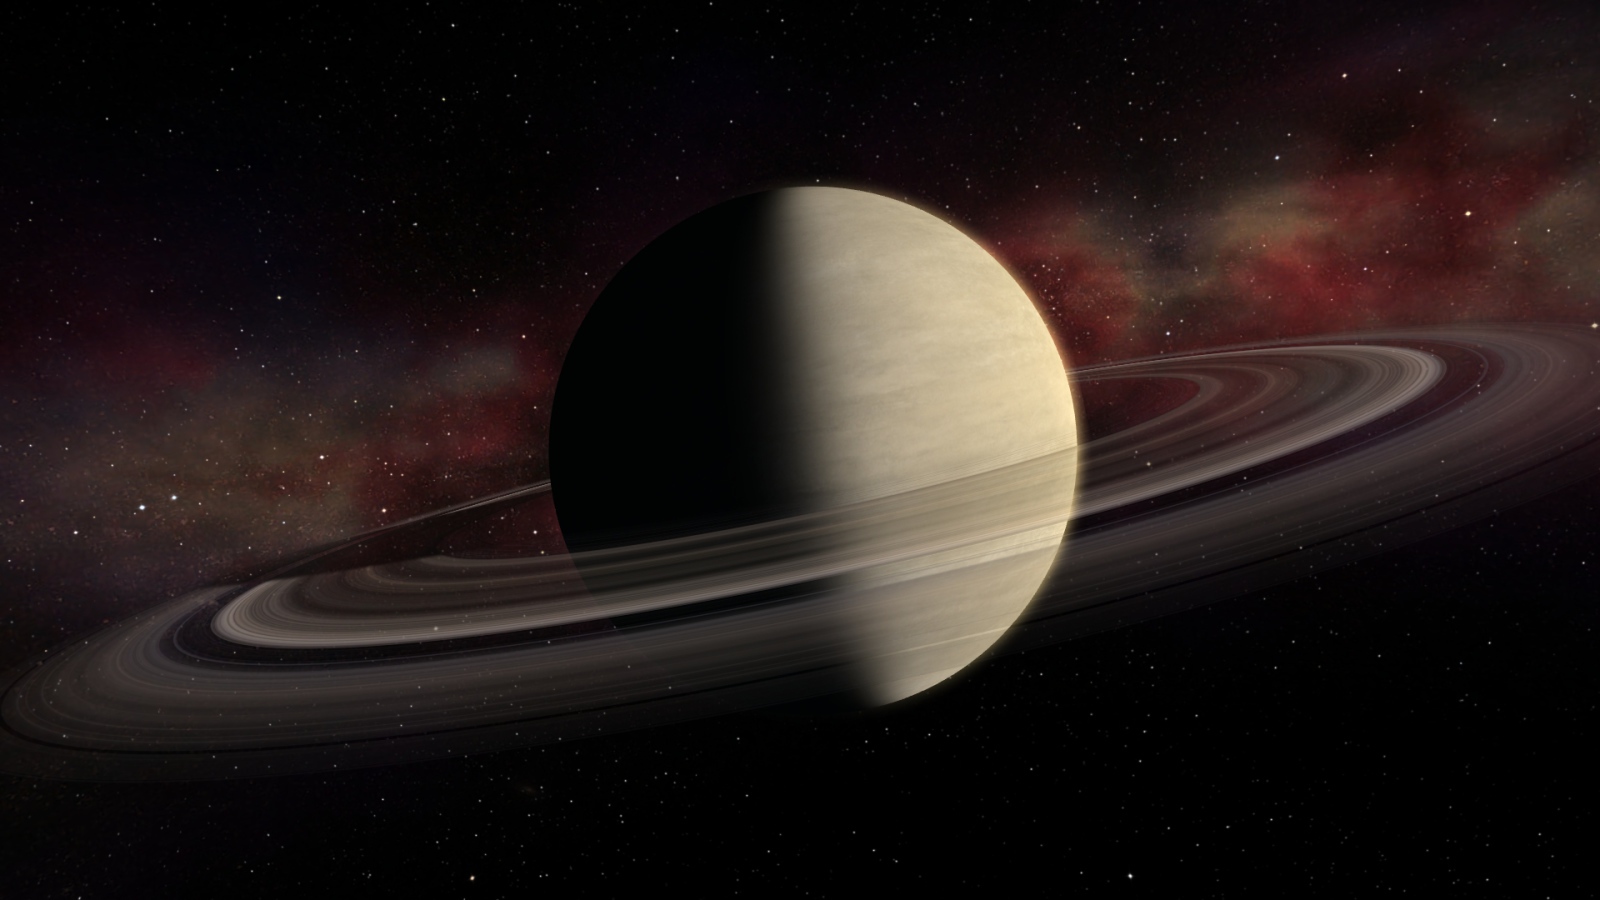 Большая планета Сатурн с кольцами 